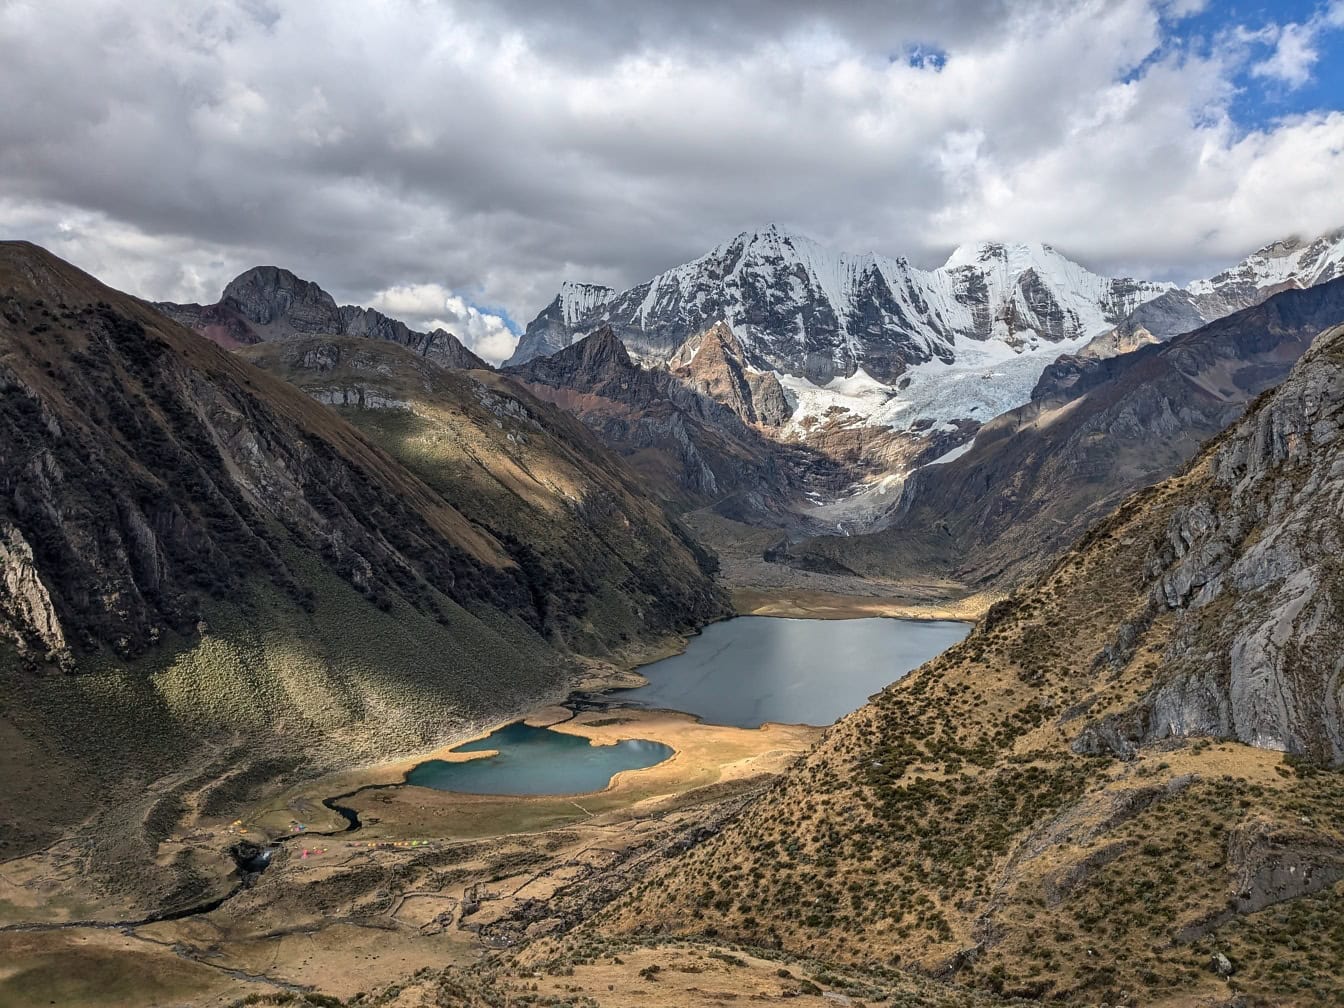 Panorámás kilátás a hegyekkel körülvett tavakra a Cordillera Huahuash-ban, a perui Andok hegységében